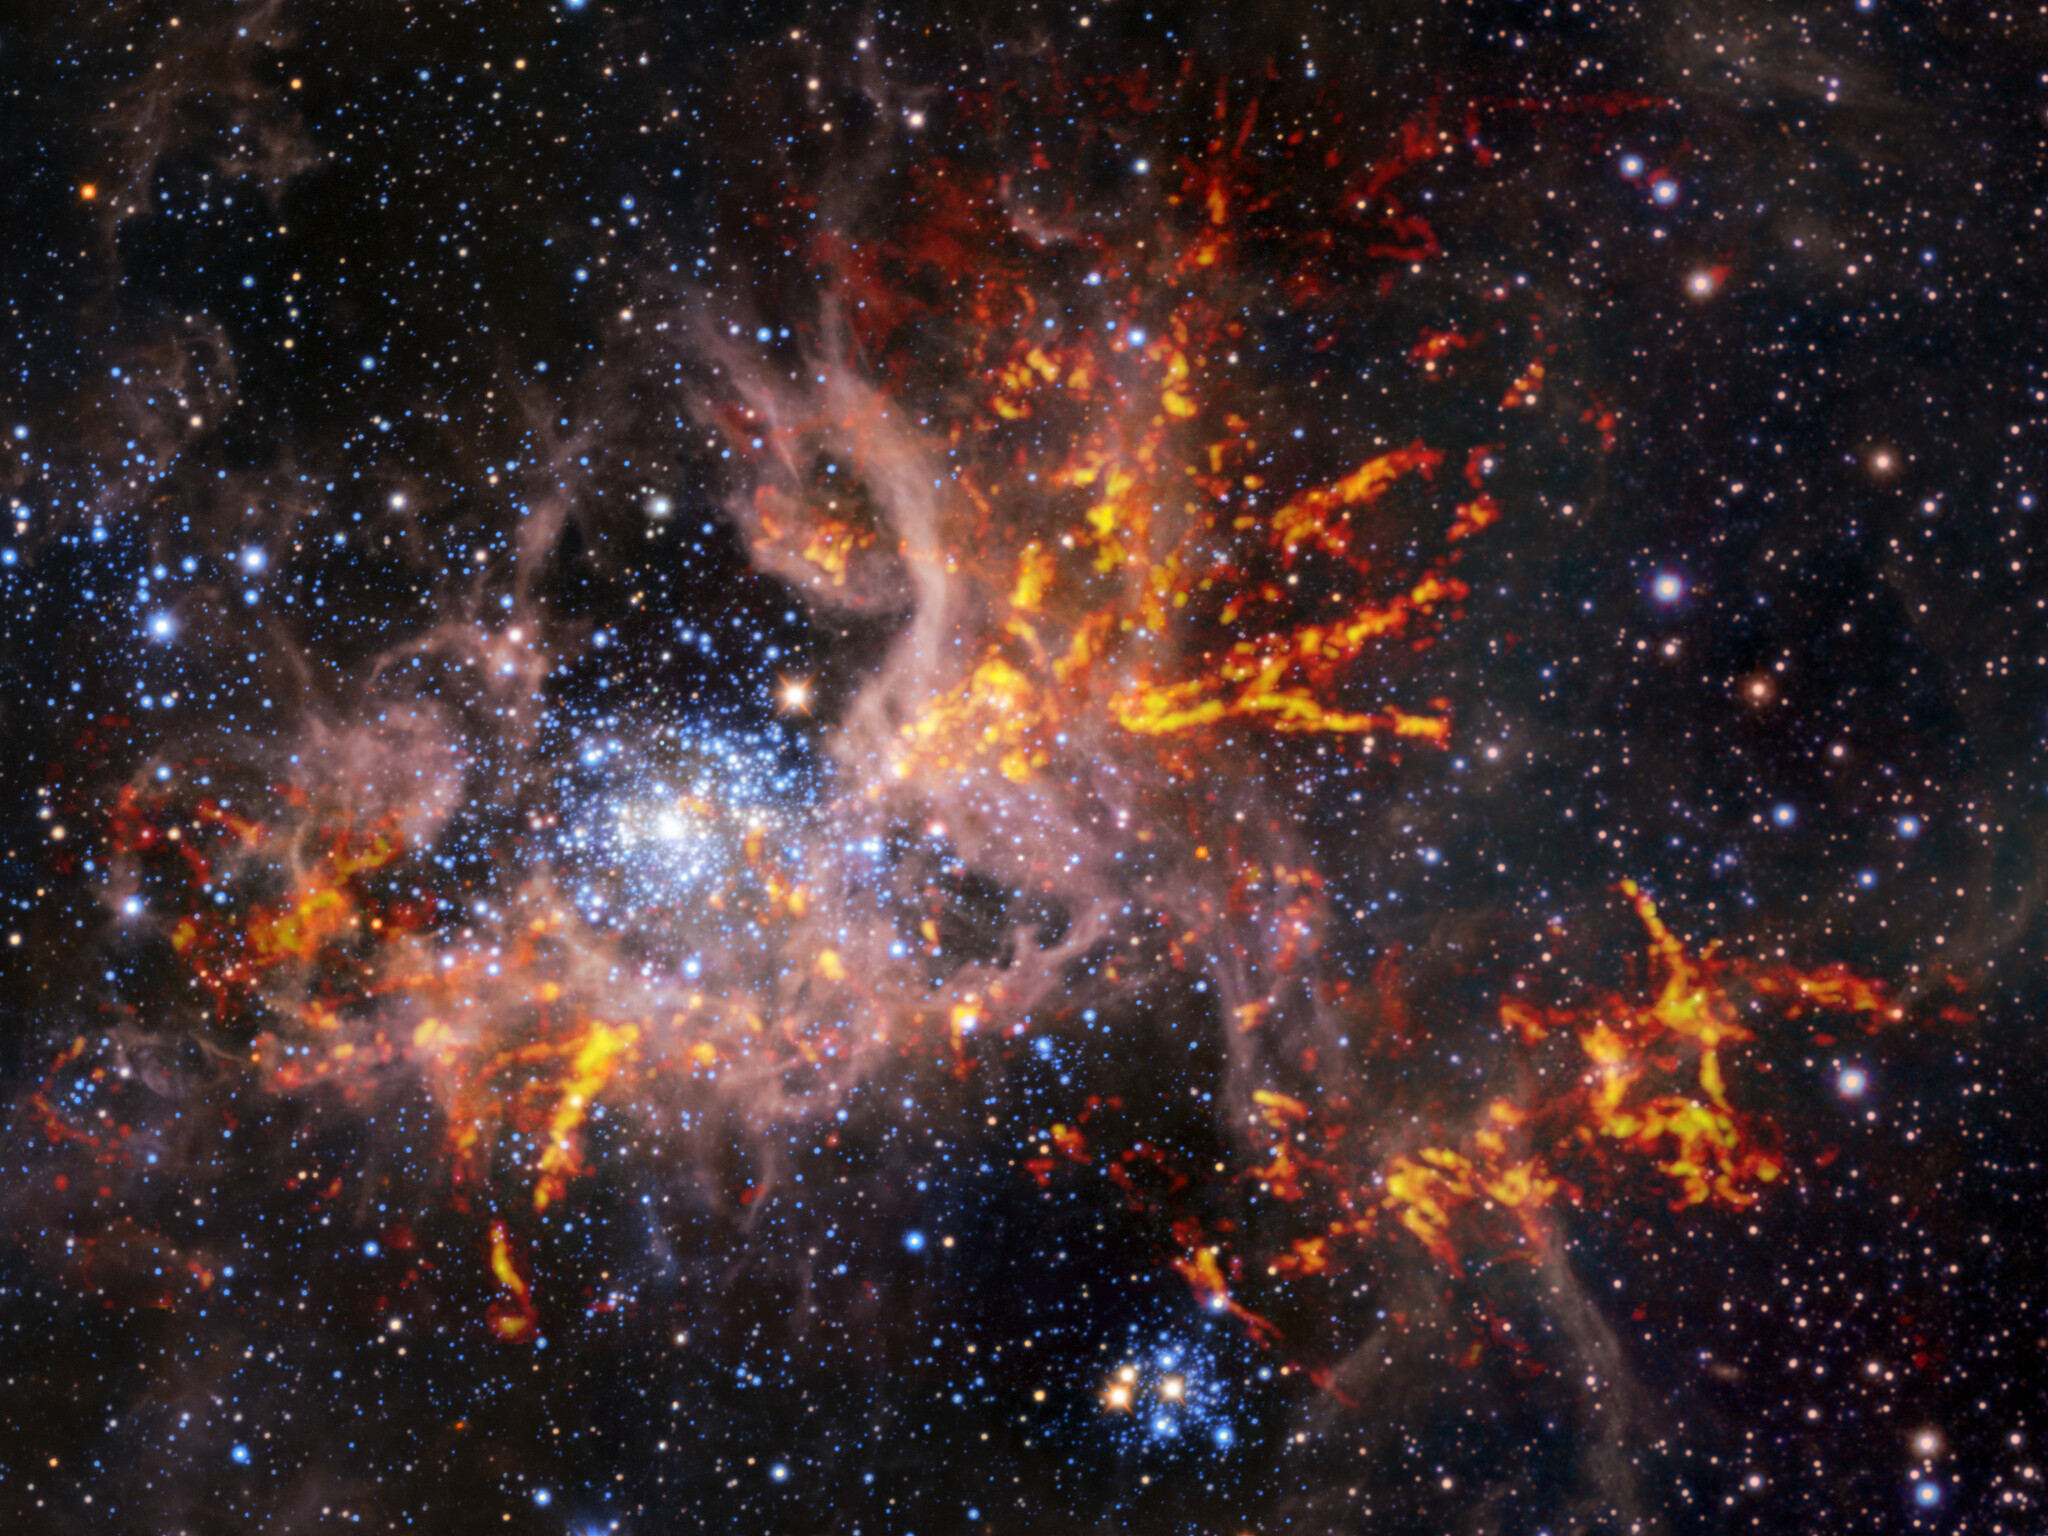 Cette image composite montre la région de formation d’étoiles 30 Doradus, également connue sous le nom de nébuleuse de la Tarentule. L’image de fond, prise dans l’infrarouge, est elle-même une image composite : elle a été capturée par les instruments HAWK-I sur le VLT et Vista de l’ESO. Elle montre des étoiles brillantes et des nuages légers et rosés de gaz chaud. Les bandes rouge-jaune brillantes qui ont été superposées à l’image proviennent d’observations radio effectuées par Alma, révélant des régions de gaz froid et dense qui ont le potentiel de s’effondrer et de former des étoiles. La structure unique en forme de toile des nuages de gaz de cette nébuleuse a conduit les astronomes à lui donner comme surnom le nom d’une araignée. © ESO, Alma (ESO/NAOJ/NRAO)/Wong et al., ESO/M.-R. Cioni/Vista Magellanic Cloud survey. Acknowledgment: Cambridge Astronomical Survey Unit